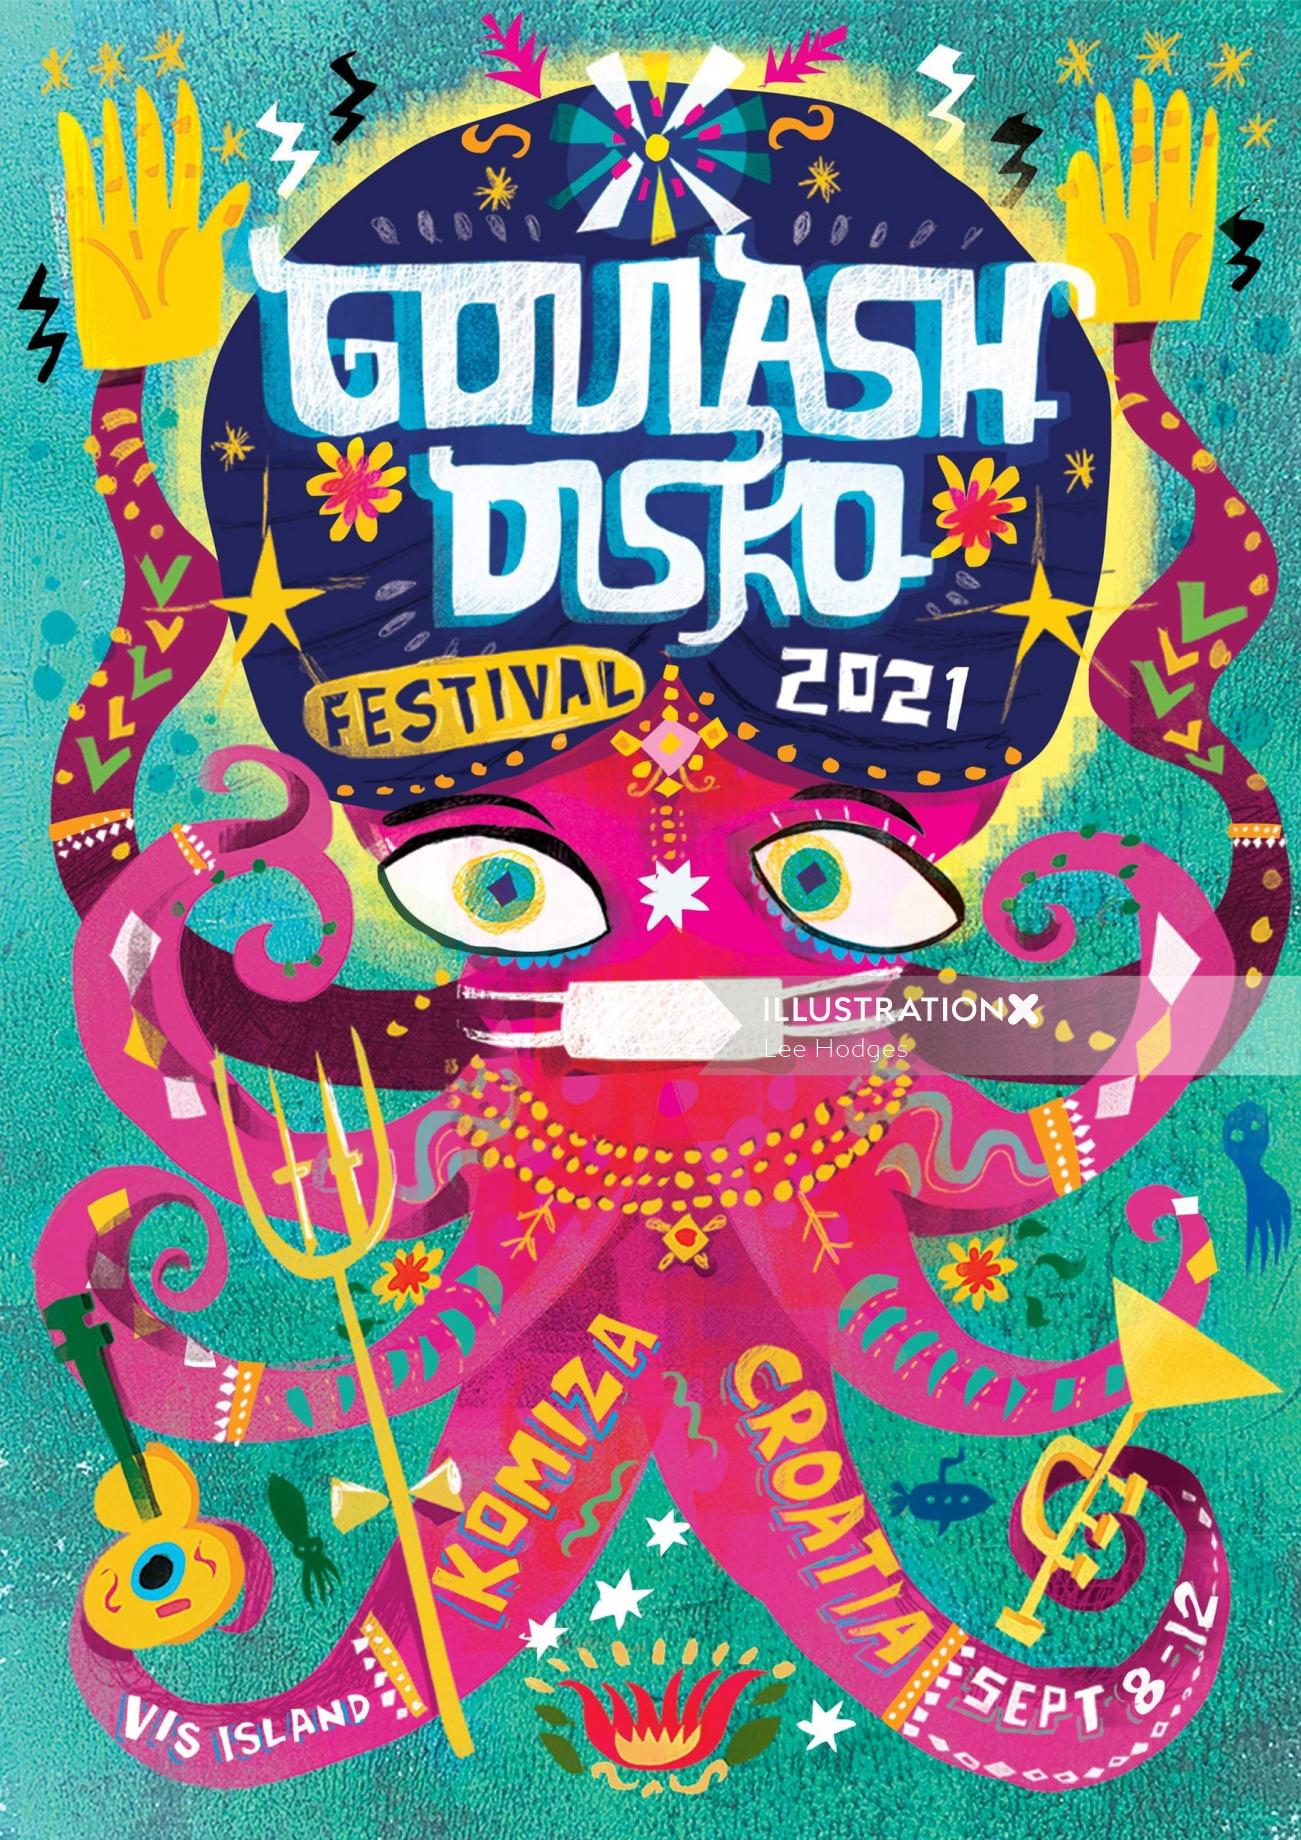 Goulash Disko Festival 2021 poster art